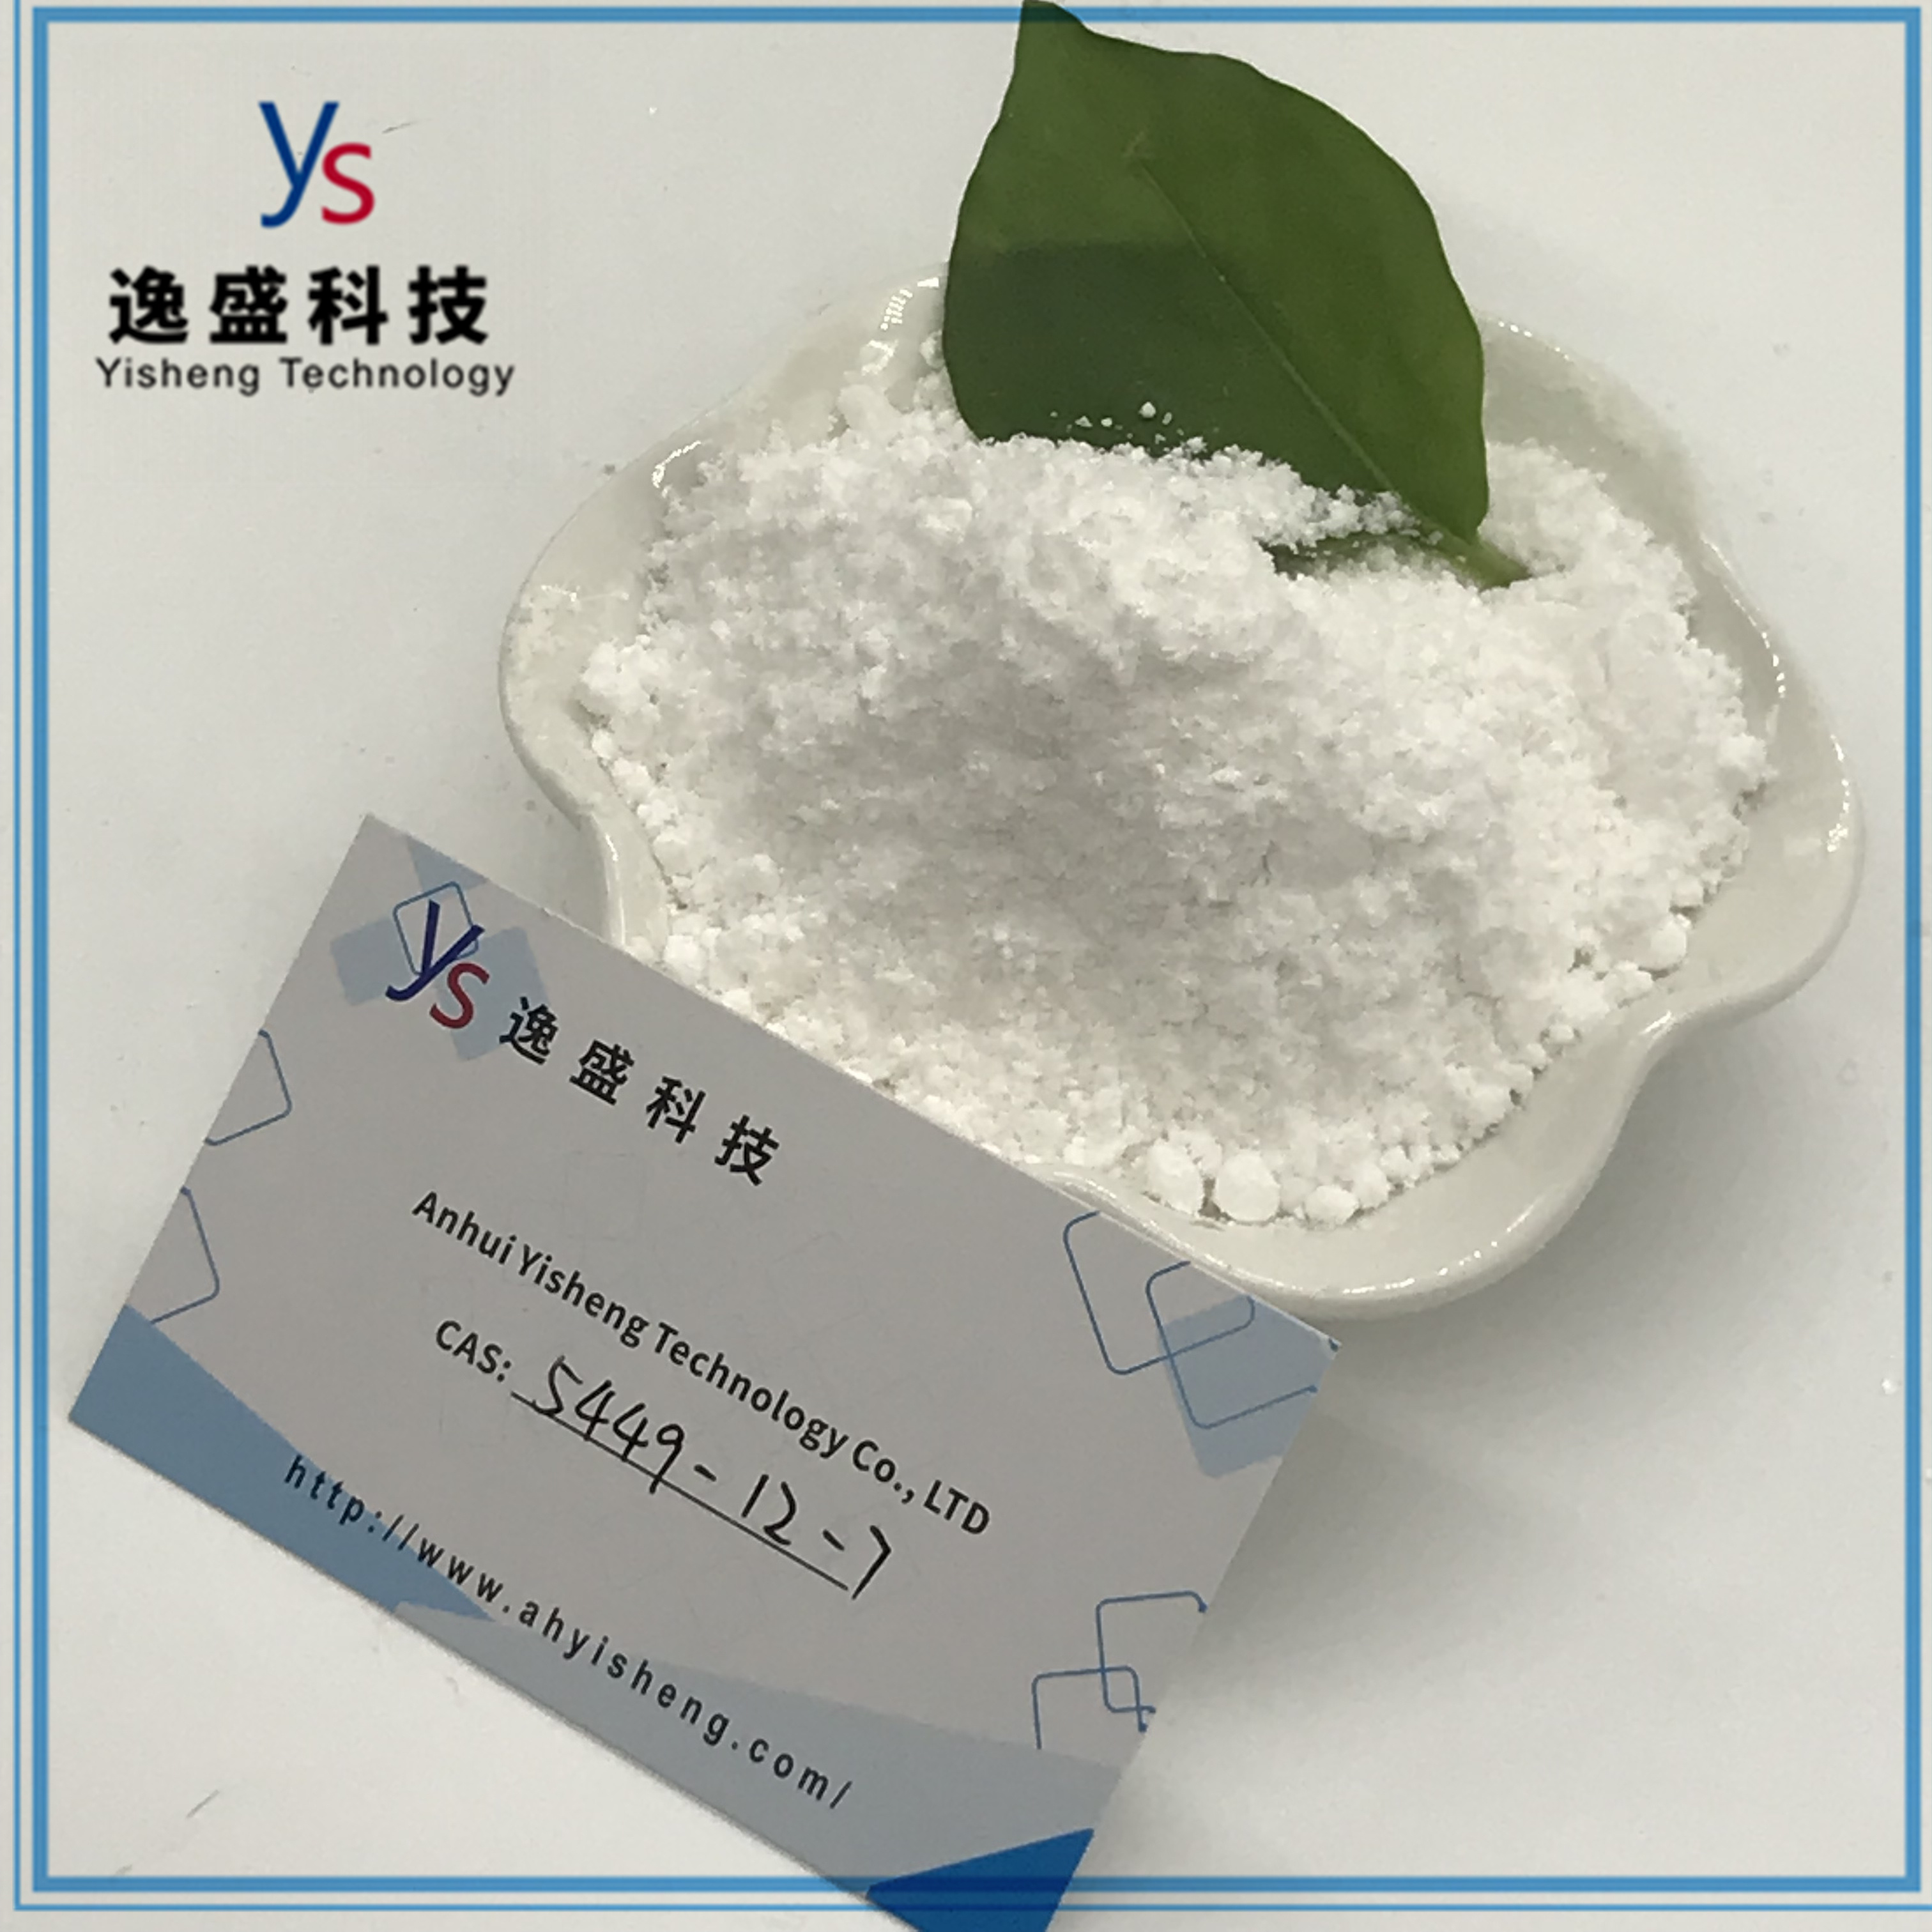 Hihg Quality CAS 5449-12-7 White Powder